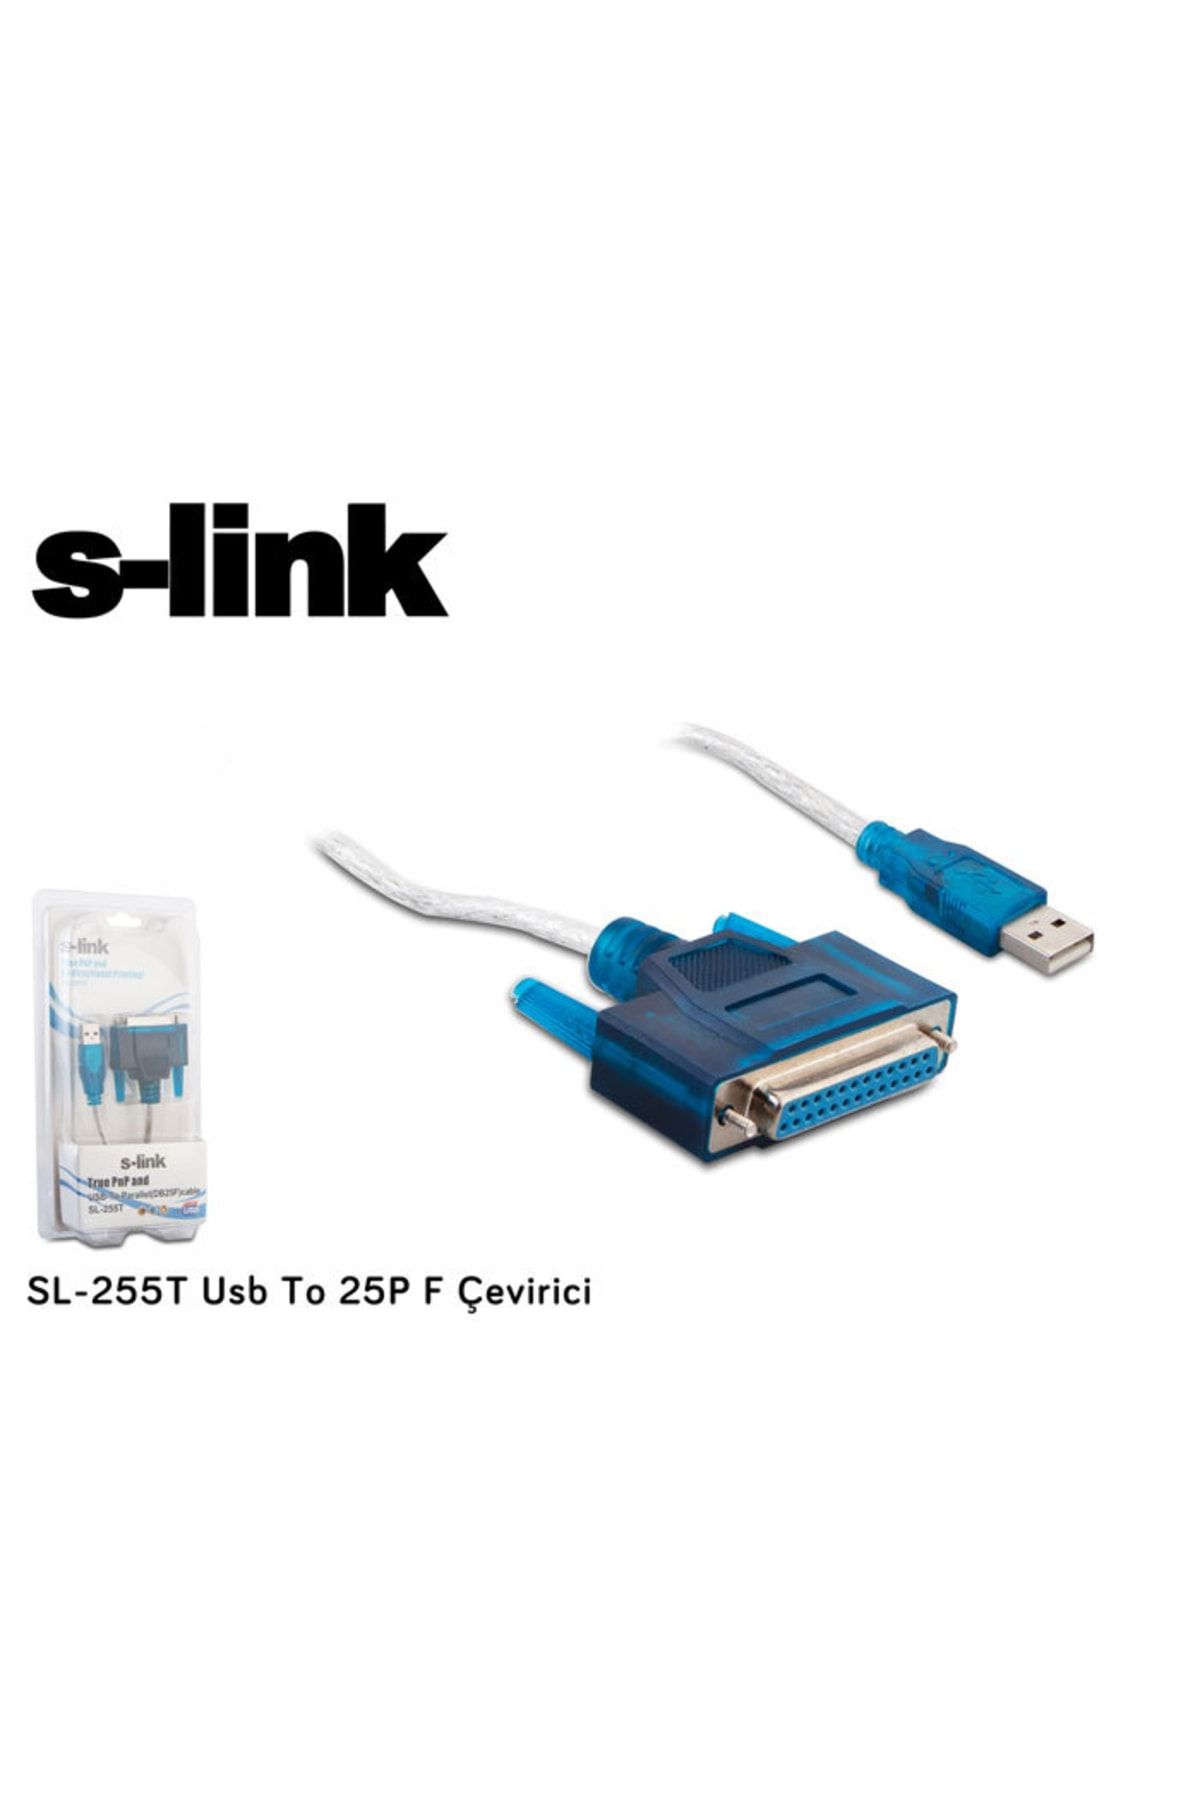 S-Link Sl-255t Usb To 25p F Çevirici